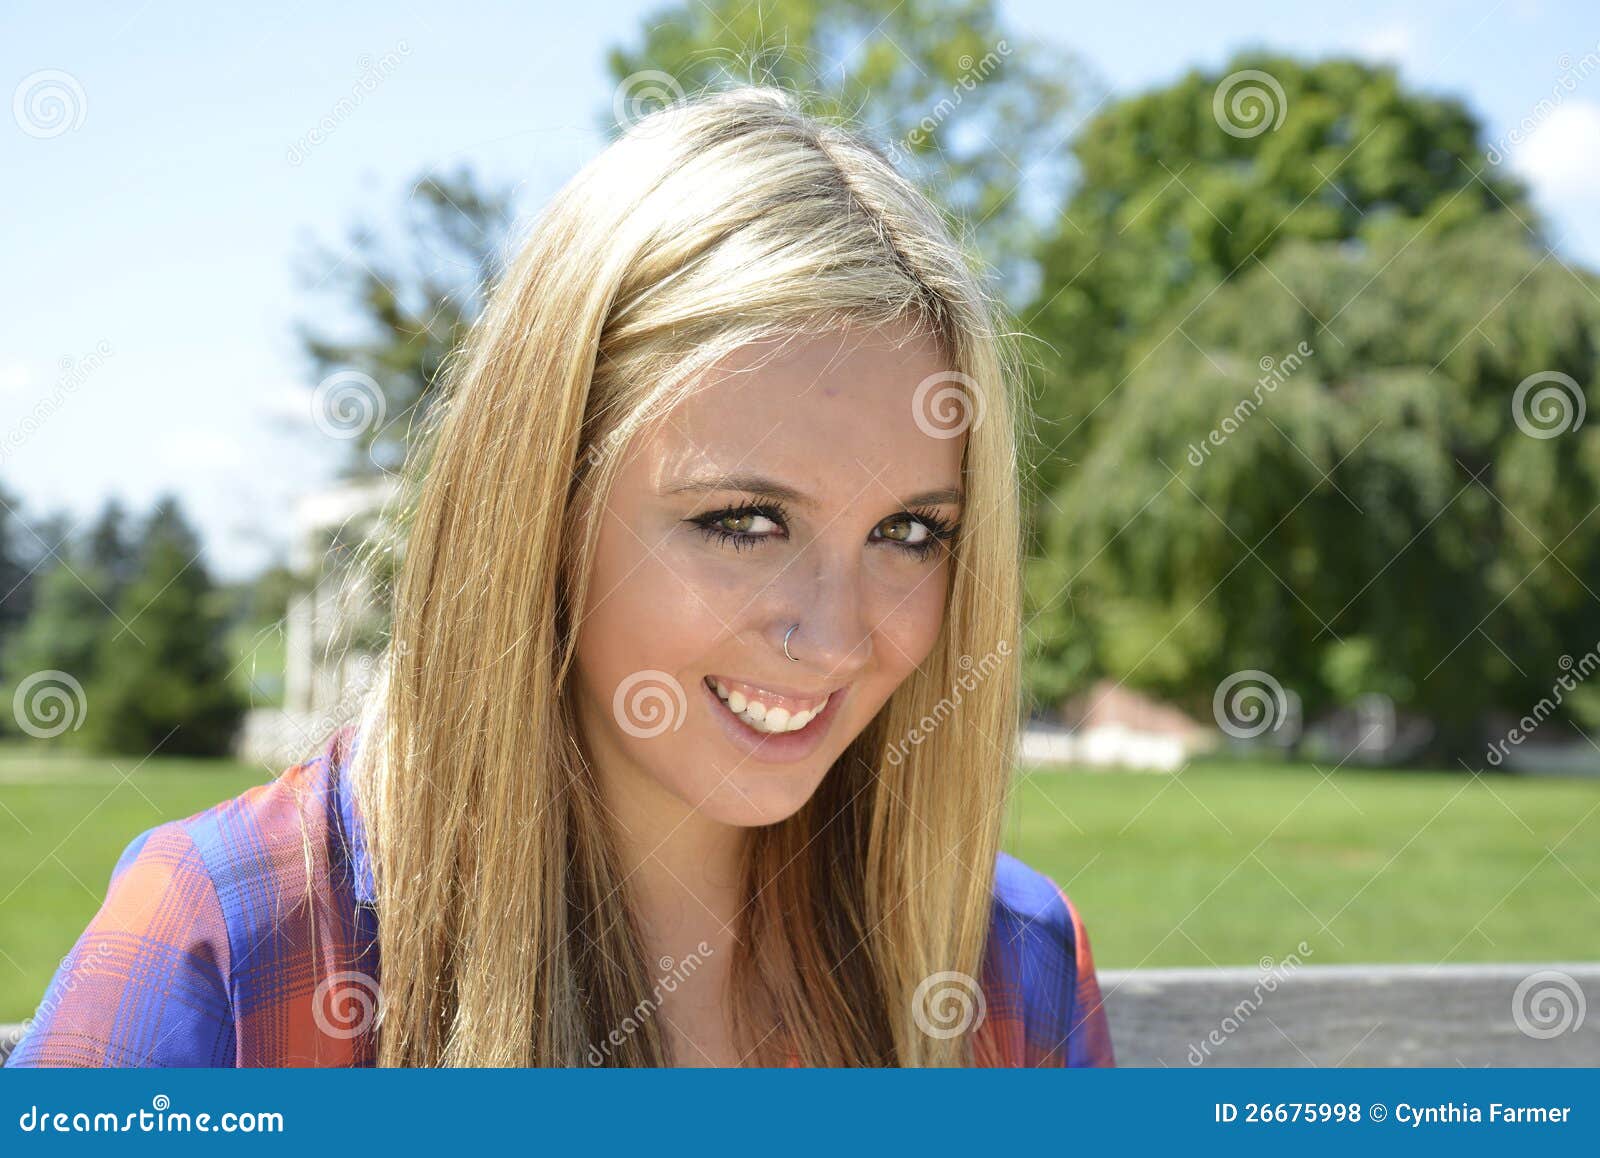 Blonde Hair Teenager Selfie - wide 7